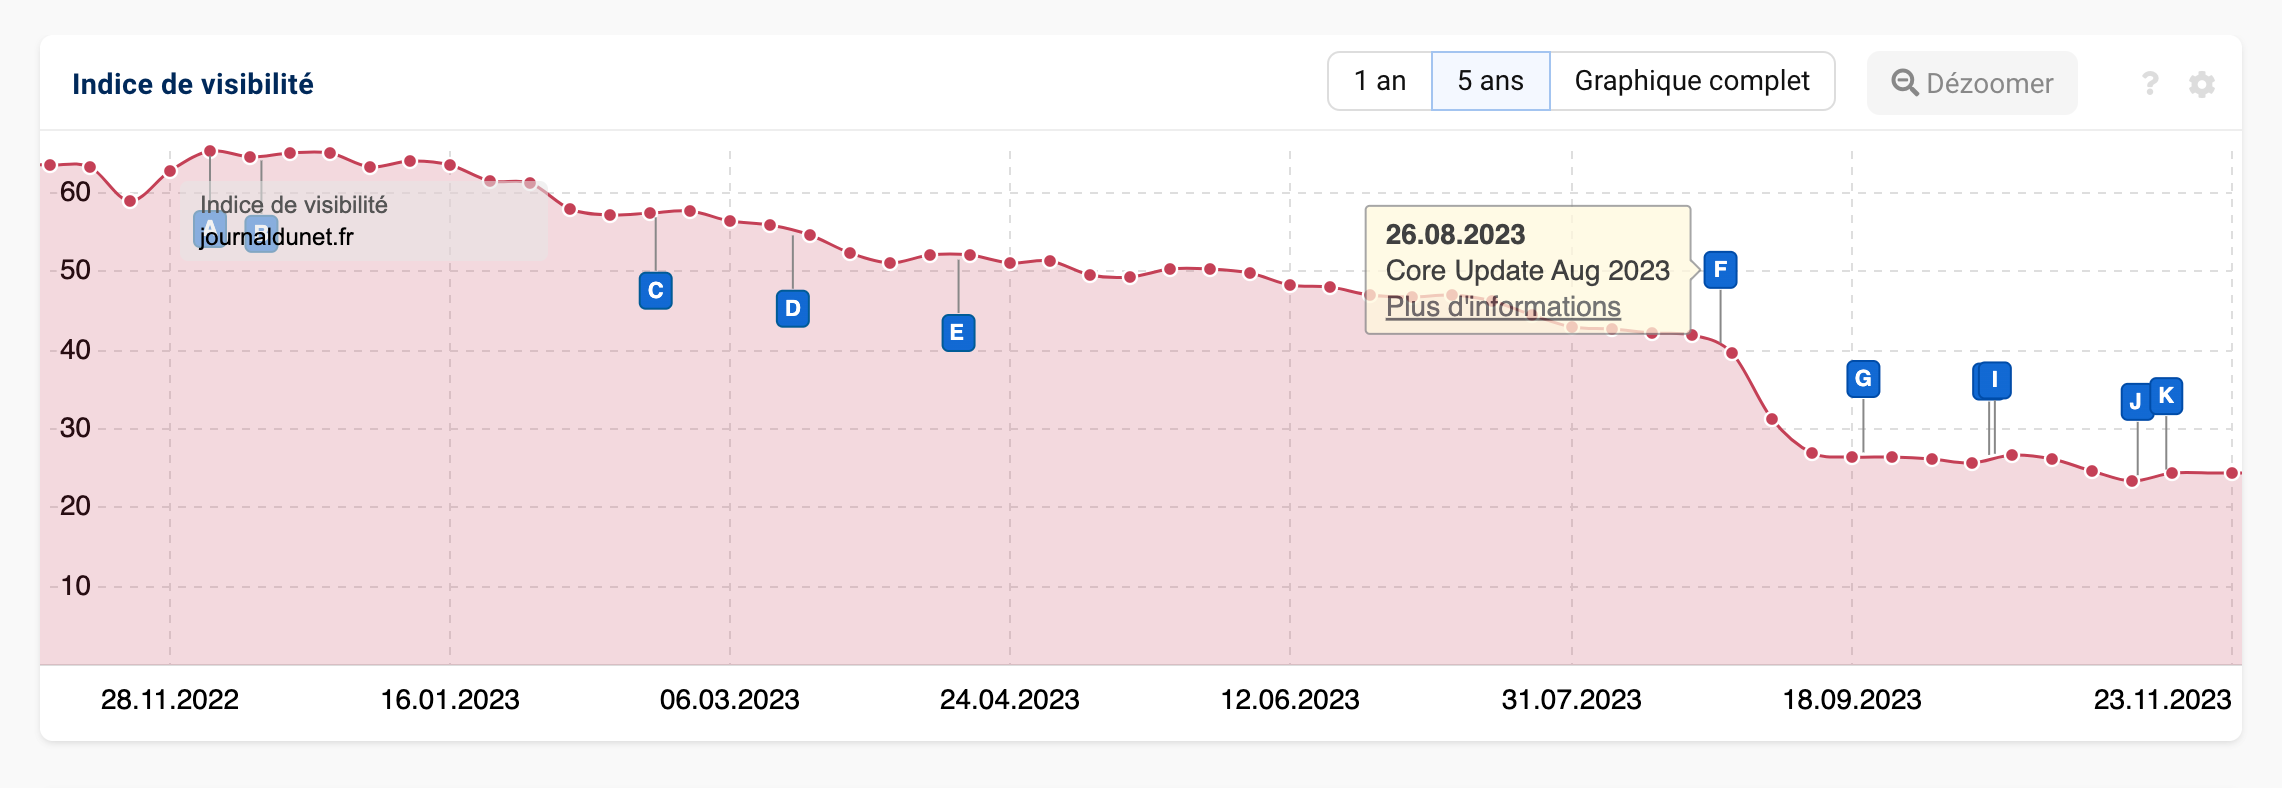 Indice de visibilité du domaine journaldunet.fr qui a connu une baisse de visibilité lors de la Core Update d'Août 2023